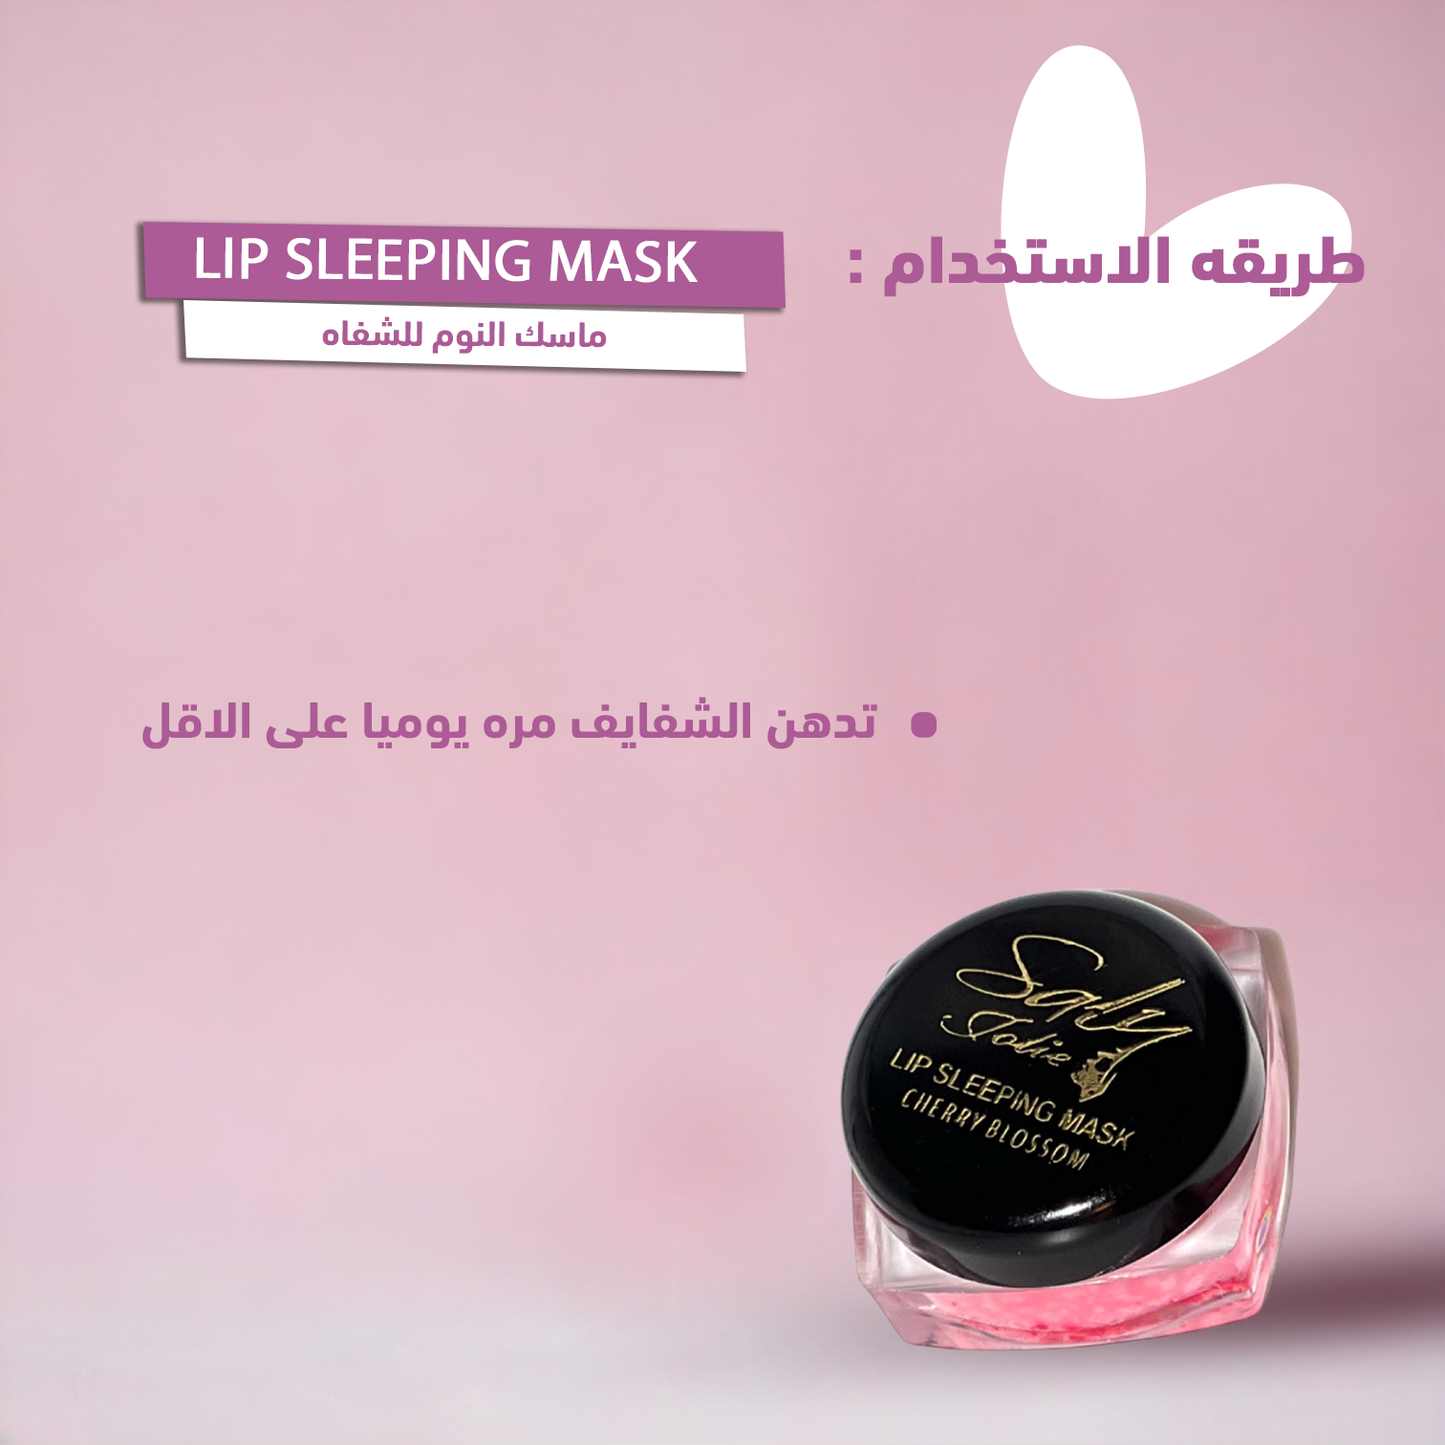 Lip sleeping mask